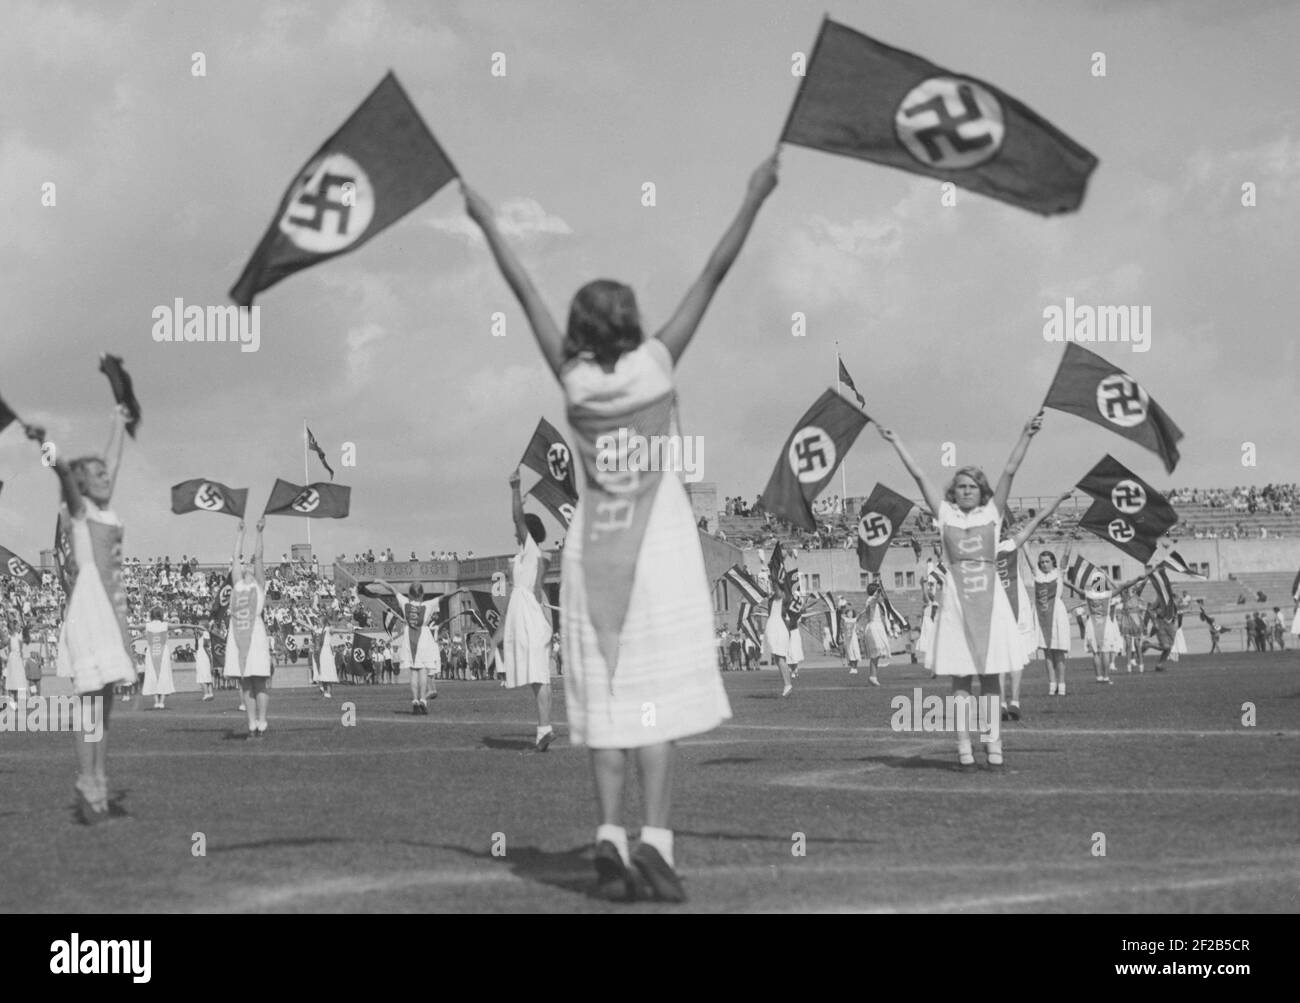 Deutschland im Jahr 1930s. Deutsche Schüler üben auf der Berliner Sportarena Deutsches Stadion eine Routine. Die Verwendung der nationalsozialistischen Flagge ist Teil der Routine. Die Flagge wurde ab 1935 zur einzigen offiziellen Flagge Nazi-Germans. Stockfoto